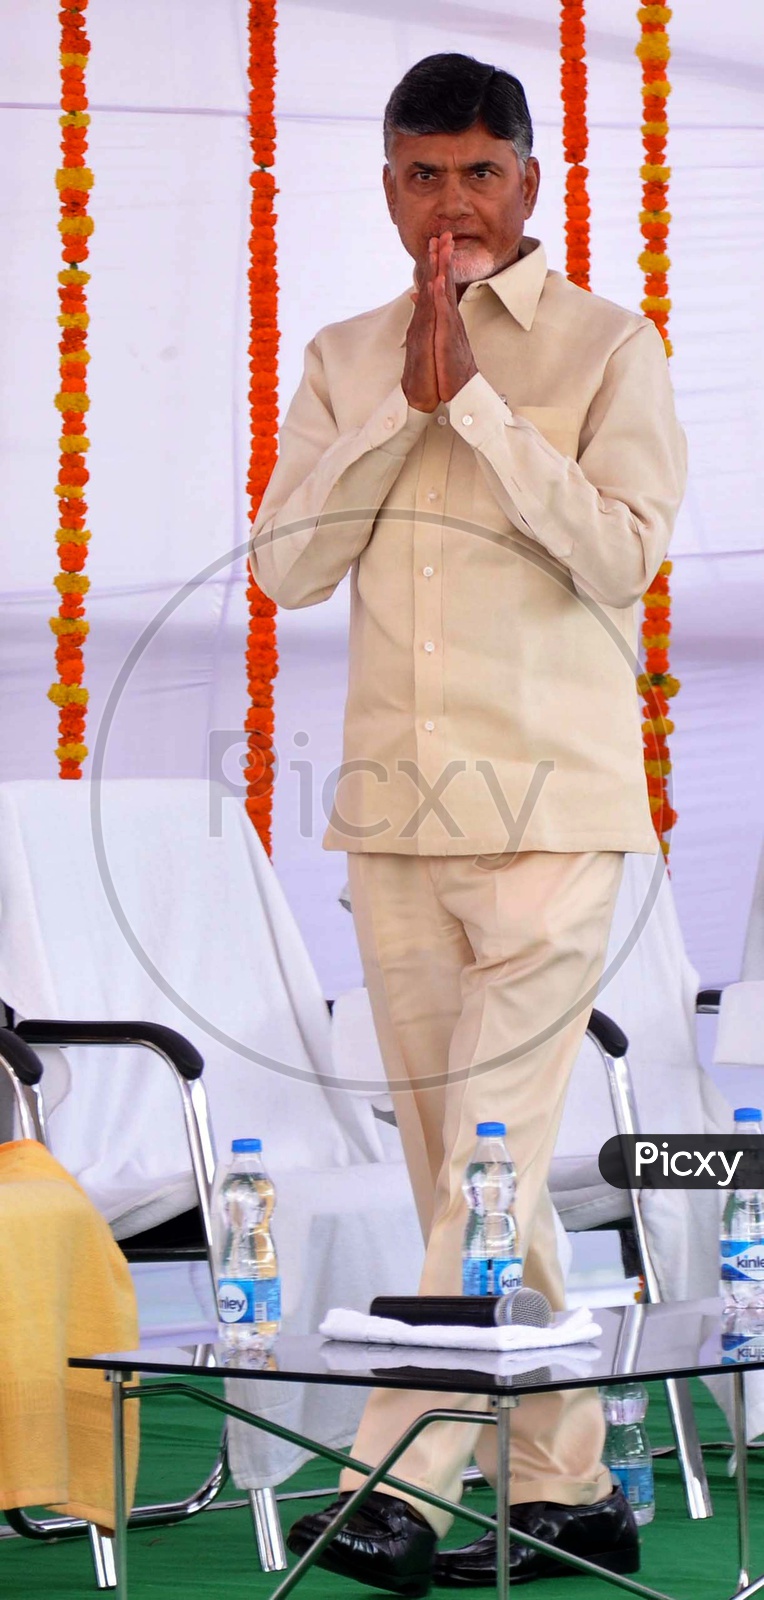 Former Andhra Pradesh Chief Minister Nara Chandrababu Naidu